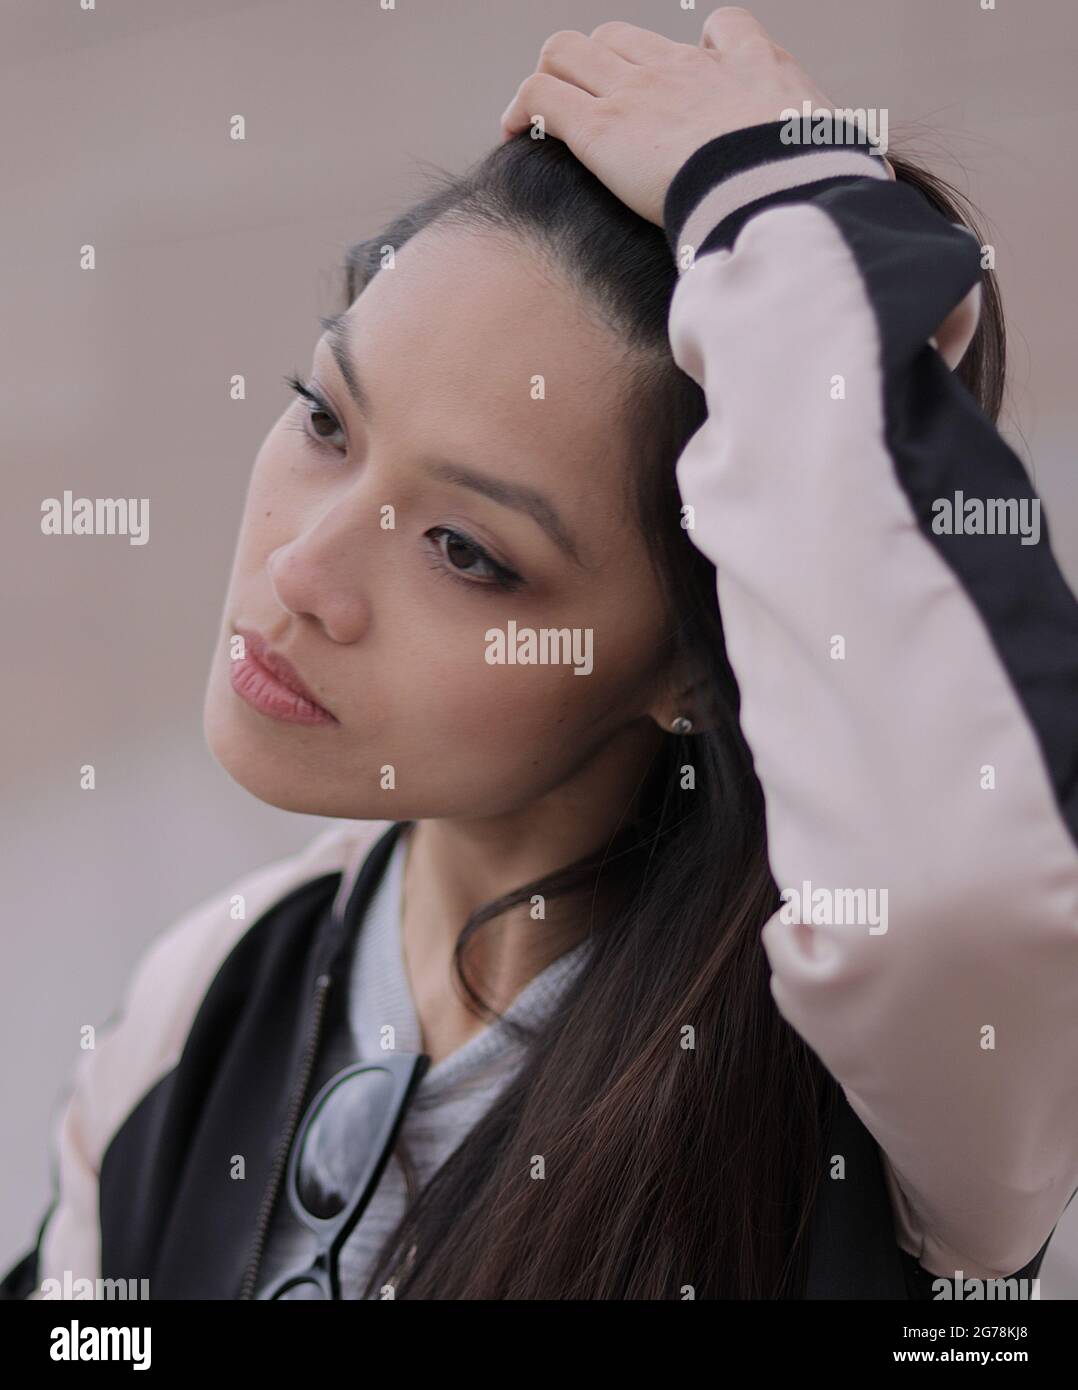 Junge asiatische Frau in einer Stadt - Menschen Fotografie Stockfoto